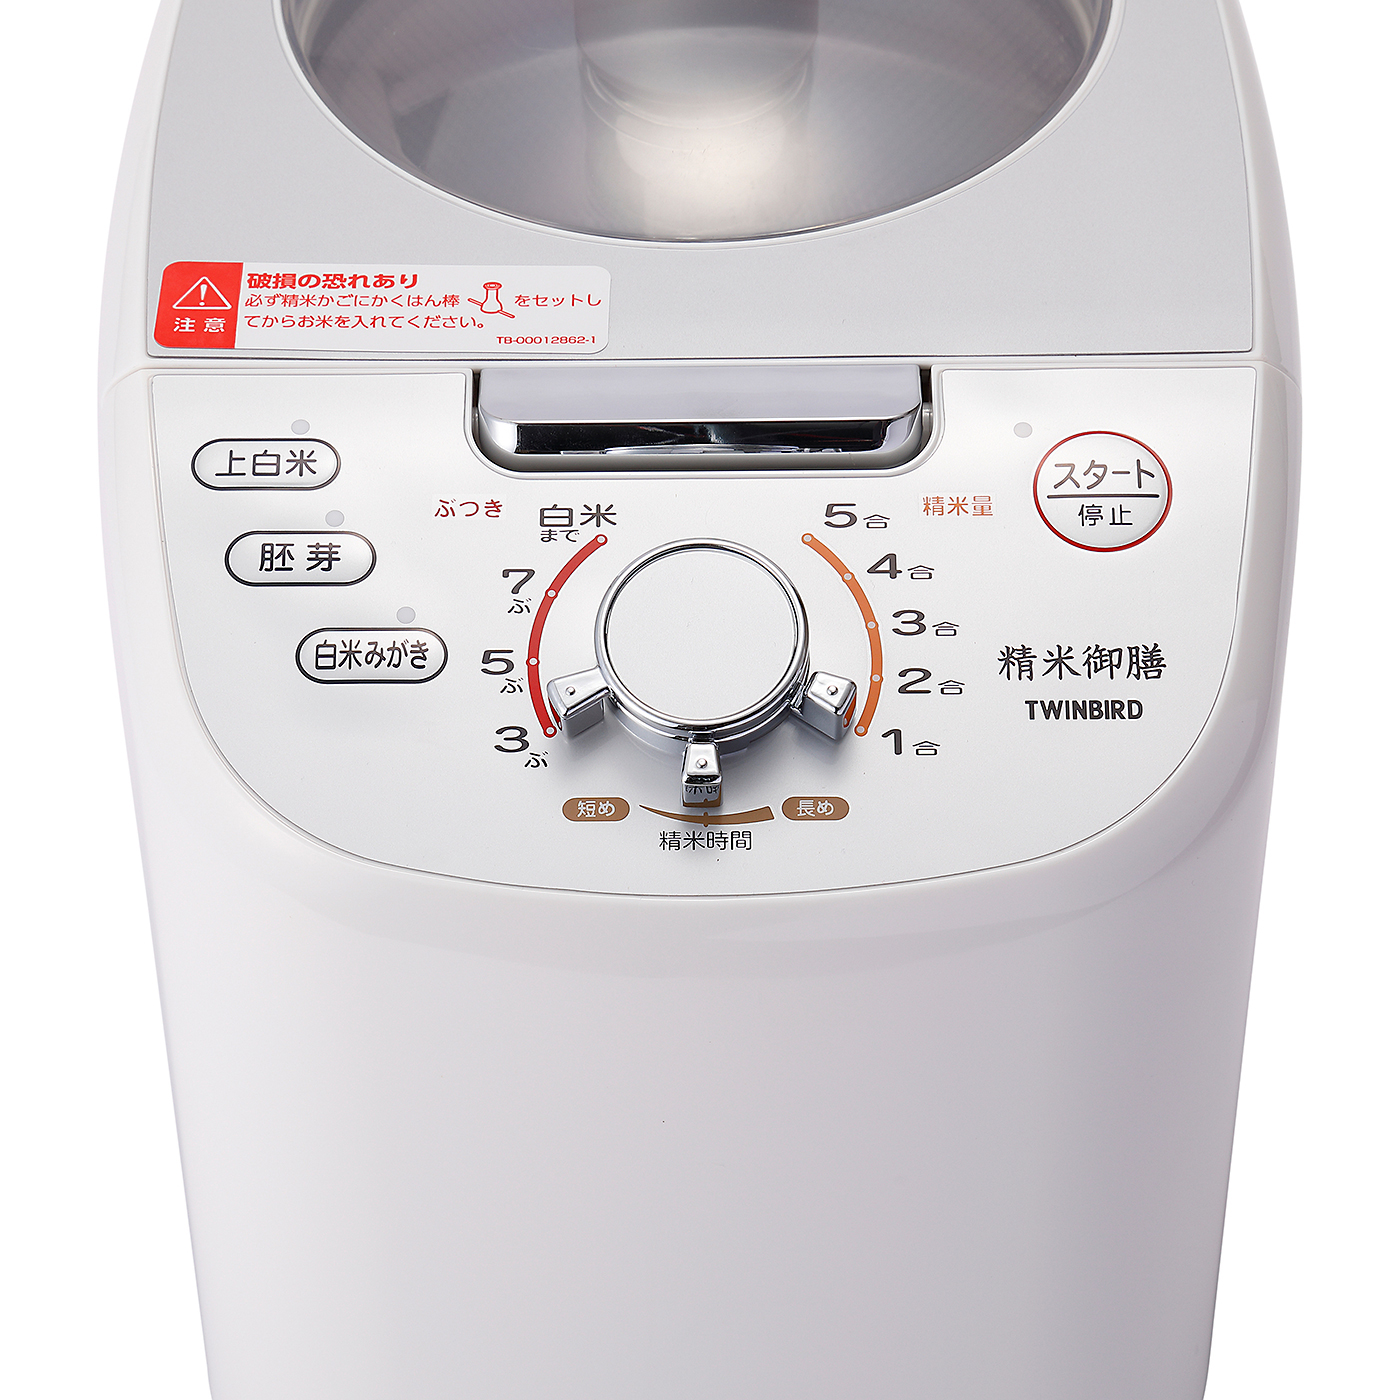 サタケ マジックミル(ギャバミル) RSKM3D 家庭キッチン用精米機 